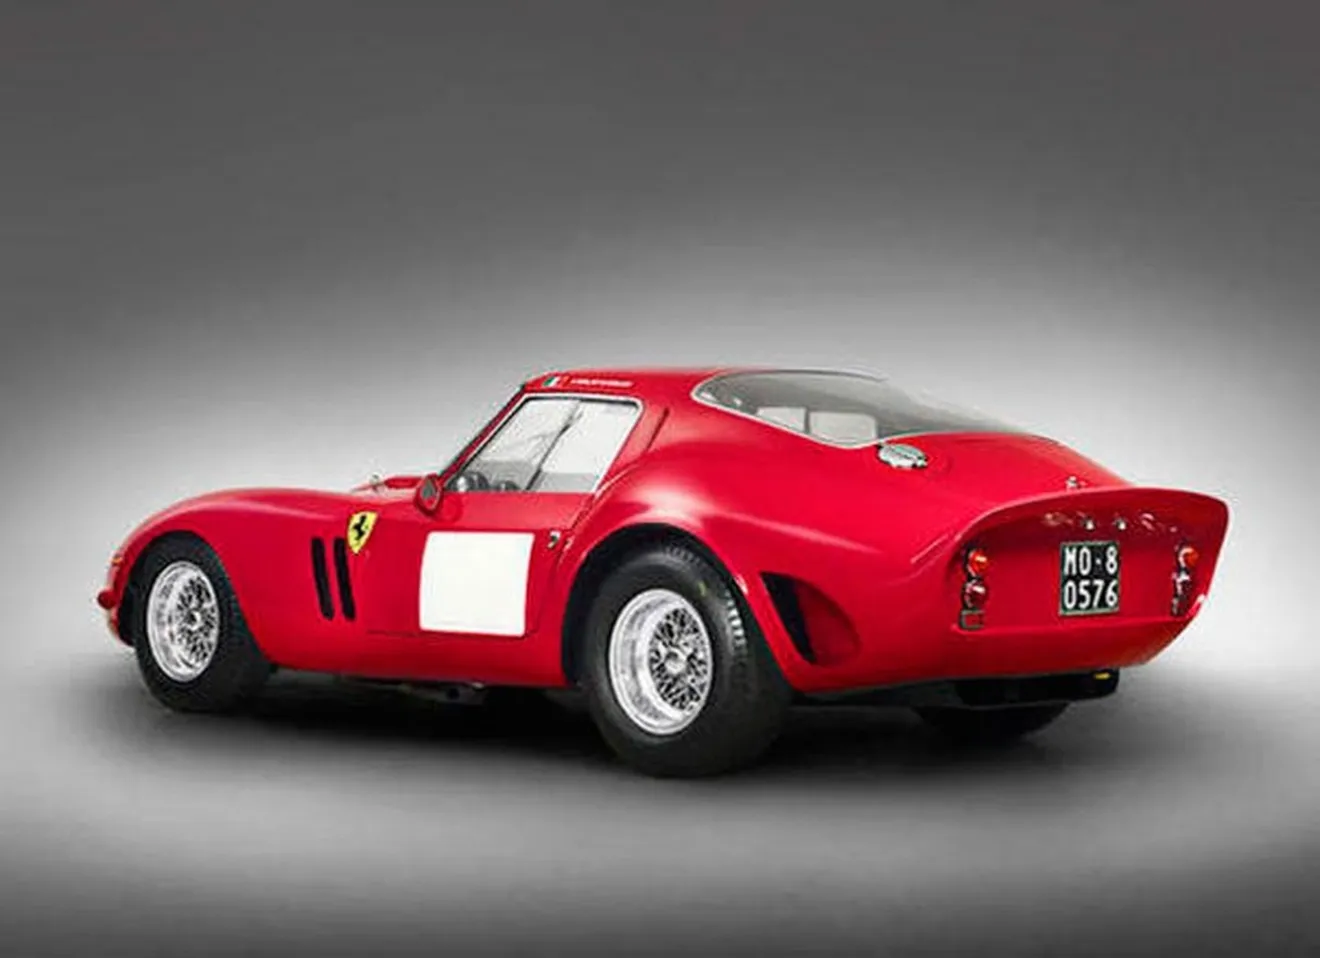  El Ferrari 250 GTO mantiene su trono por 28,3 millones de euros